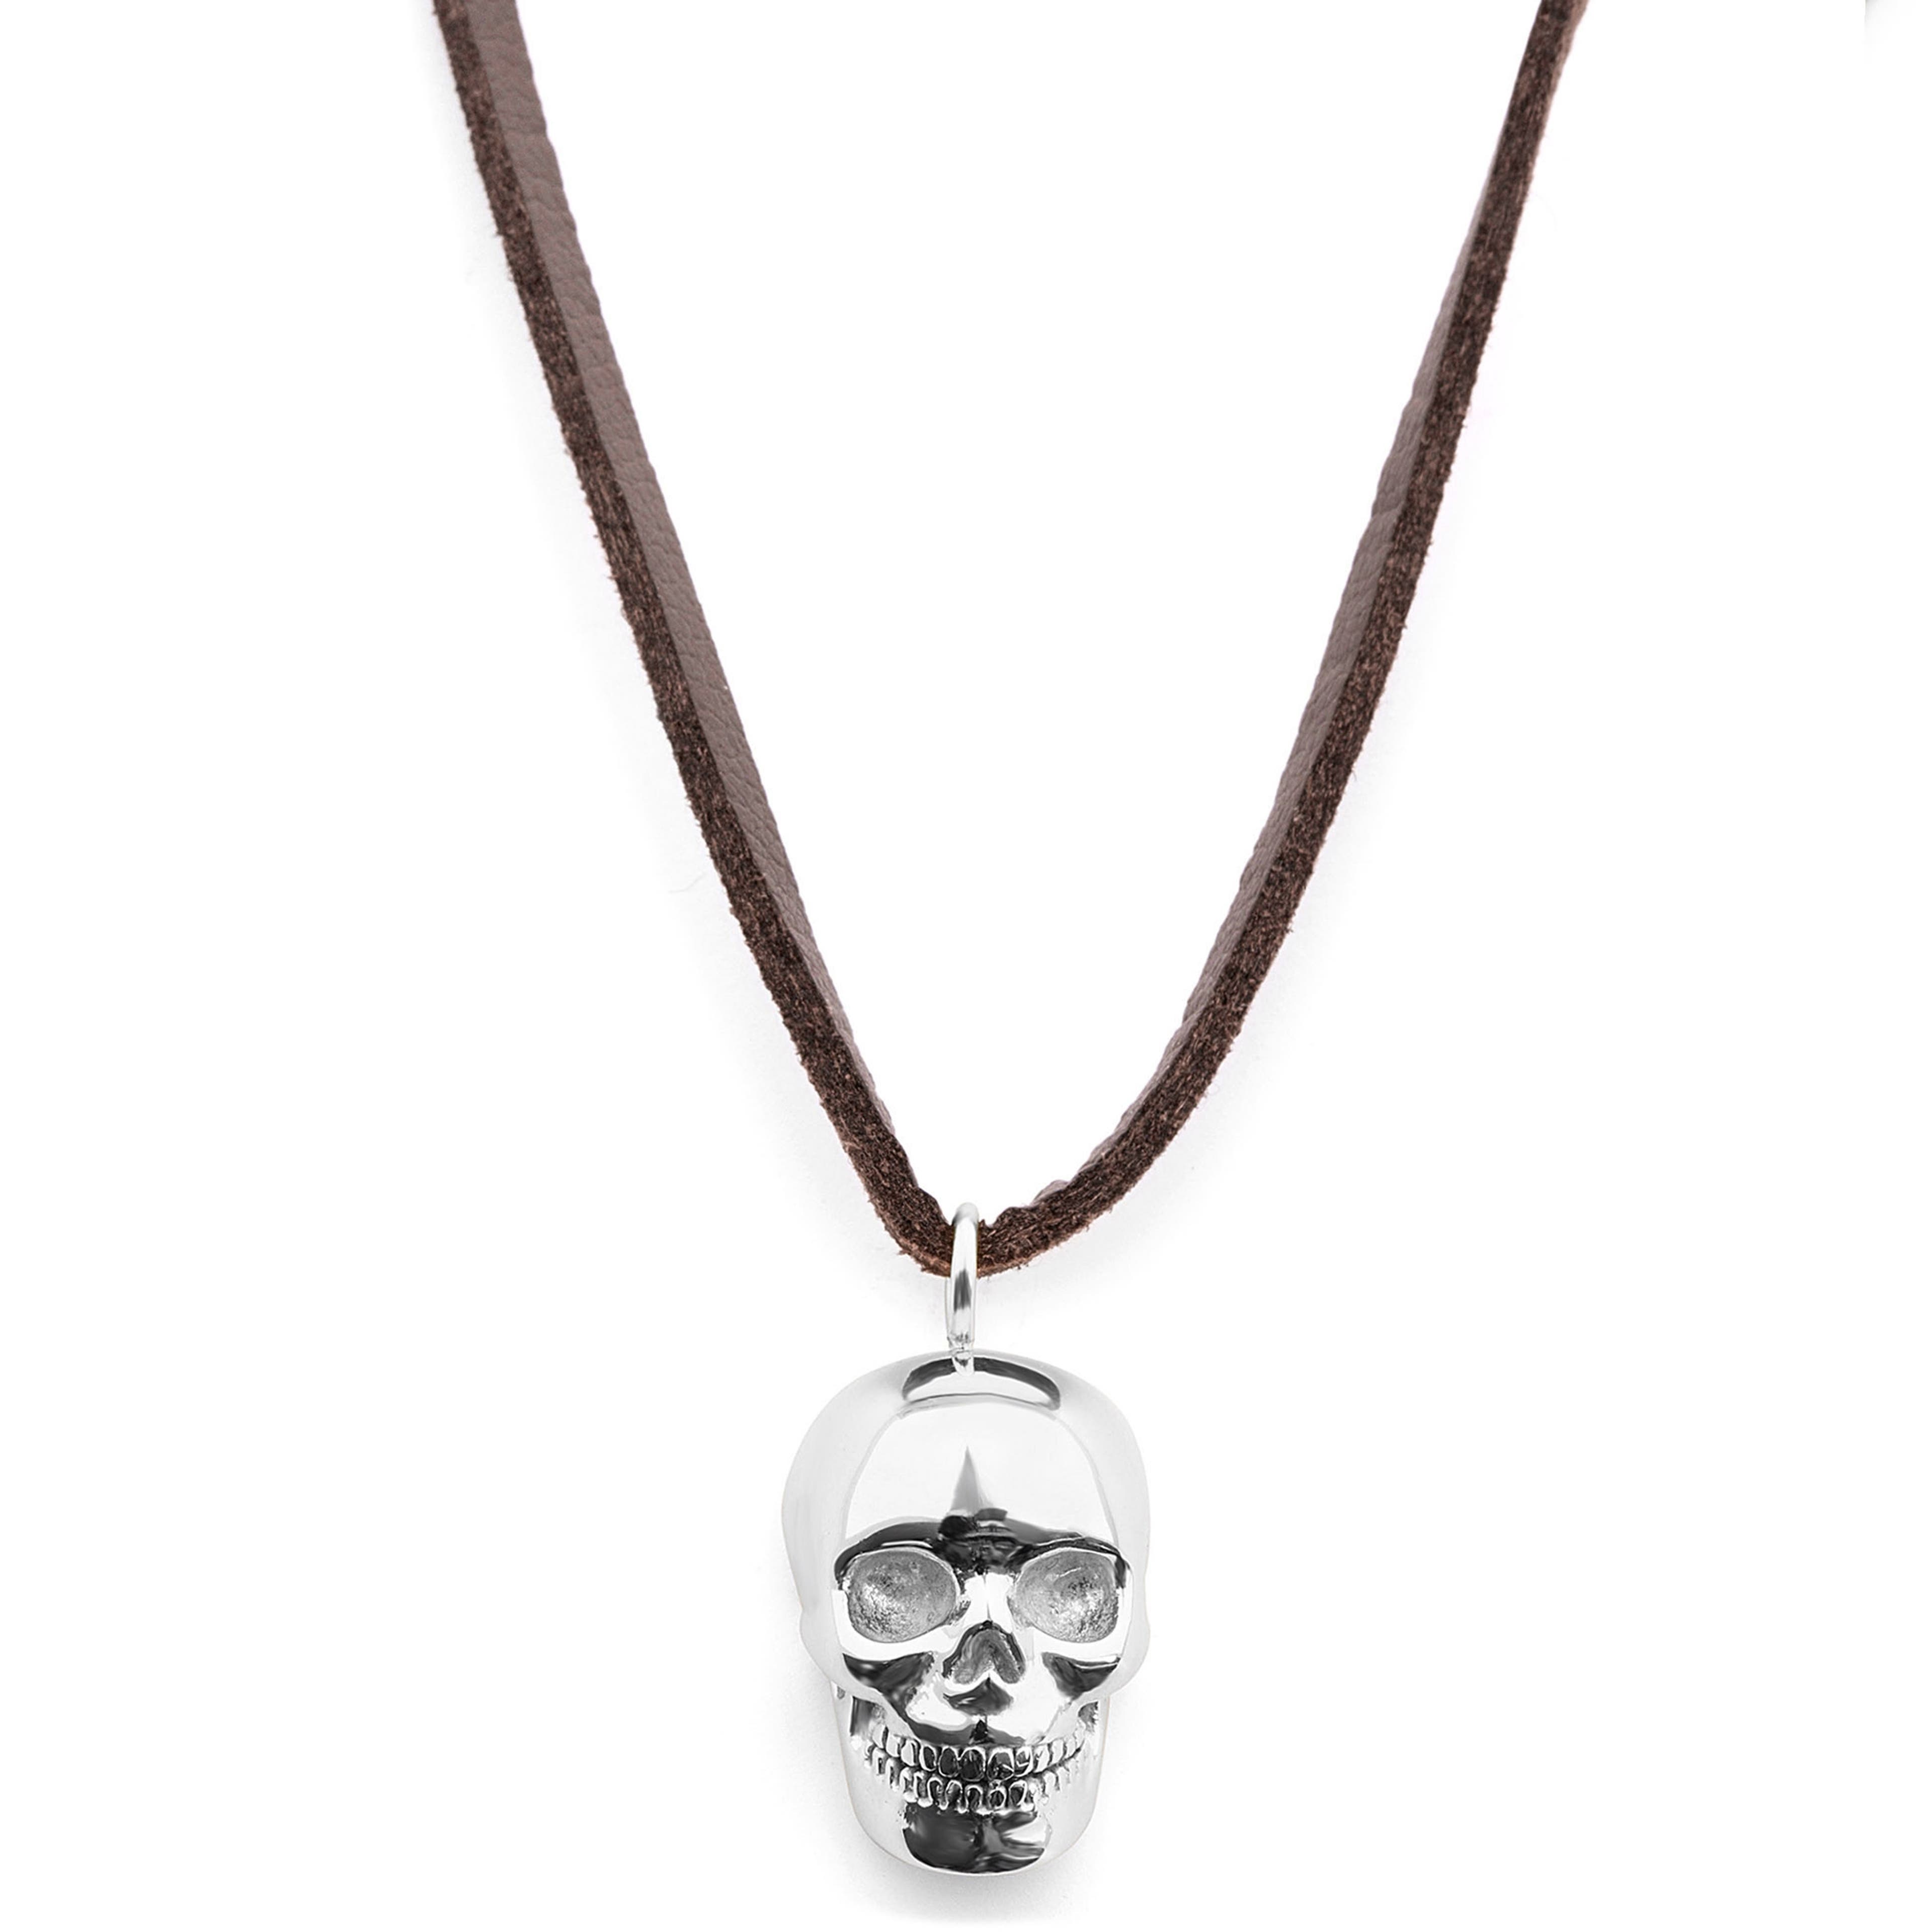 Skórzany naszyjnik z motywem czaszki w srebrnym tonie